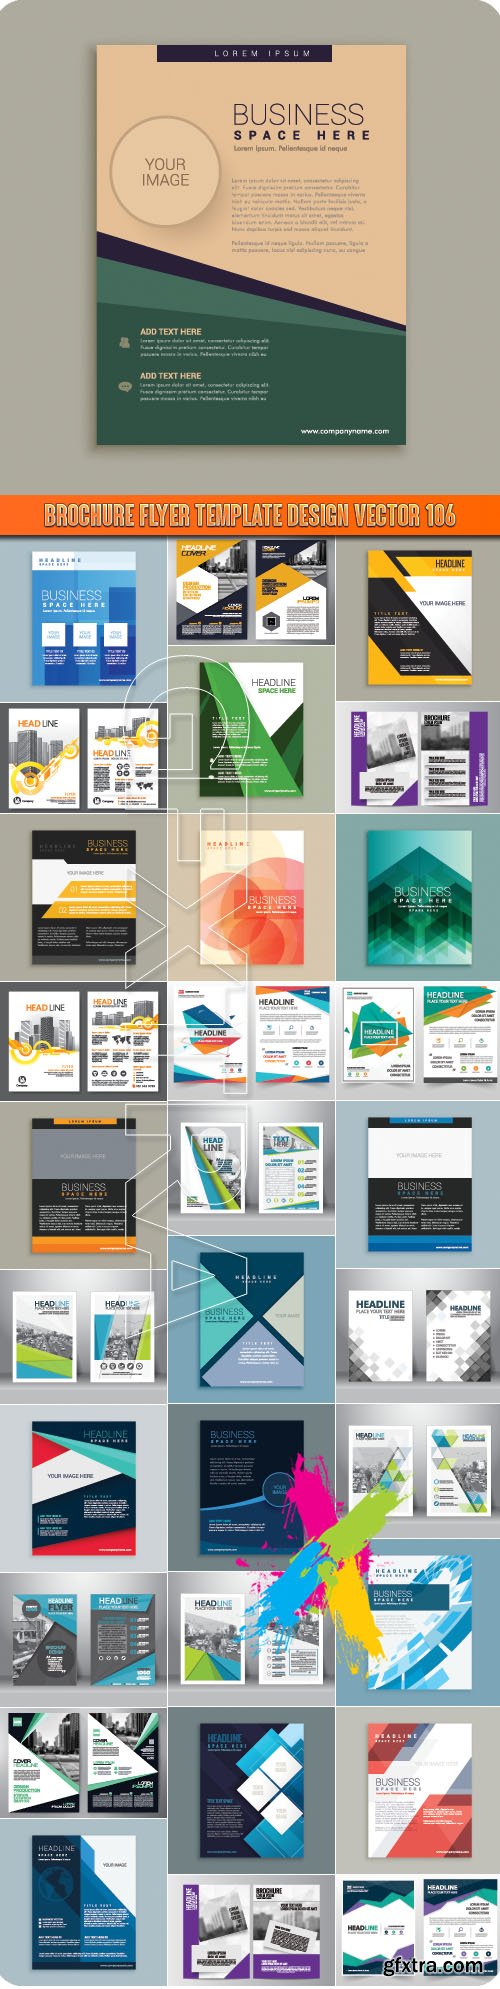 Brochure flyer template design vector 106